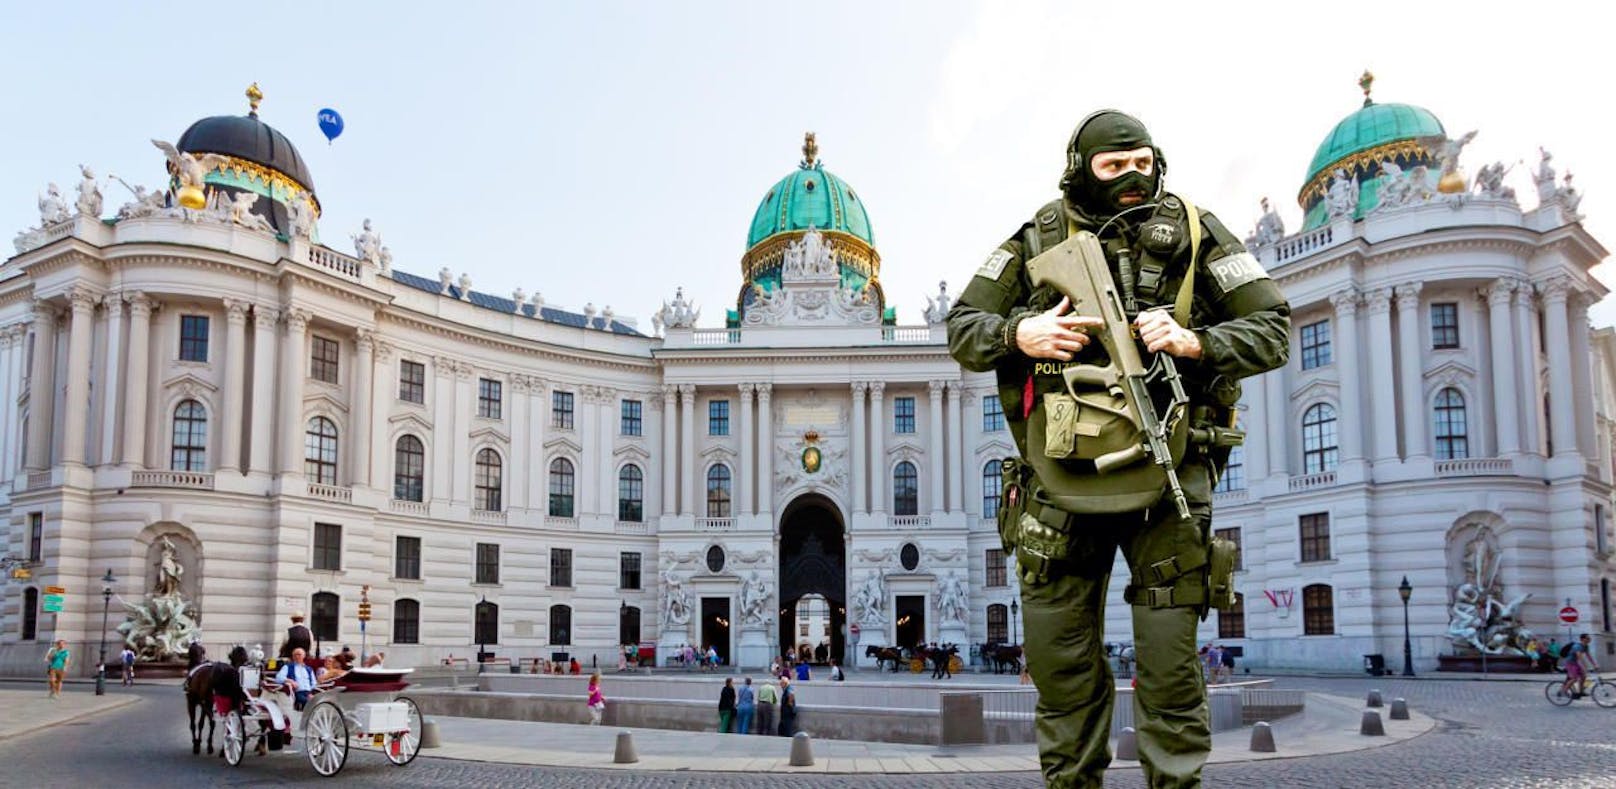 Einbruchs-Alarm: Wega und Polizei mussten in die Hofburg